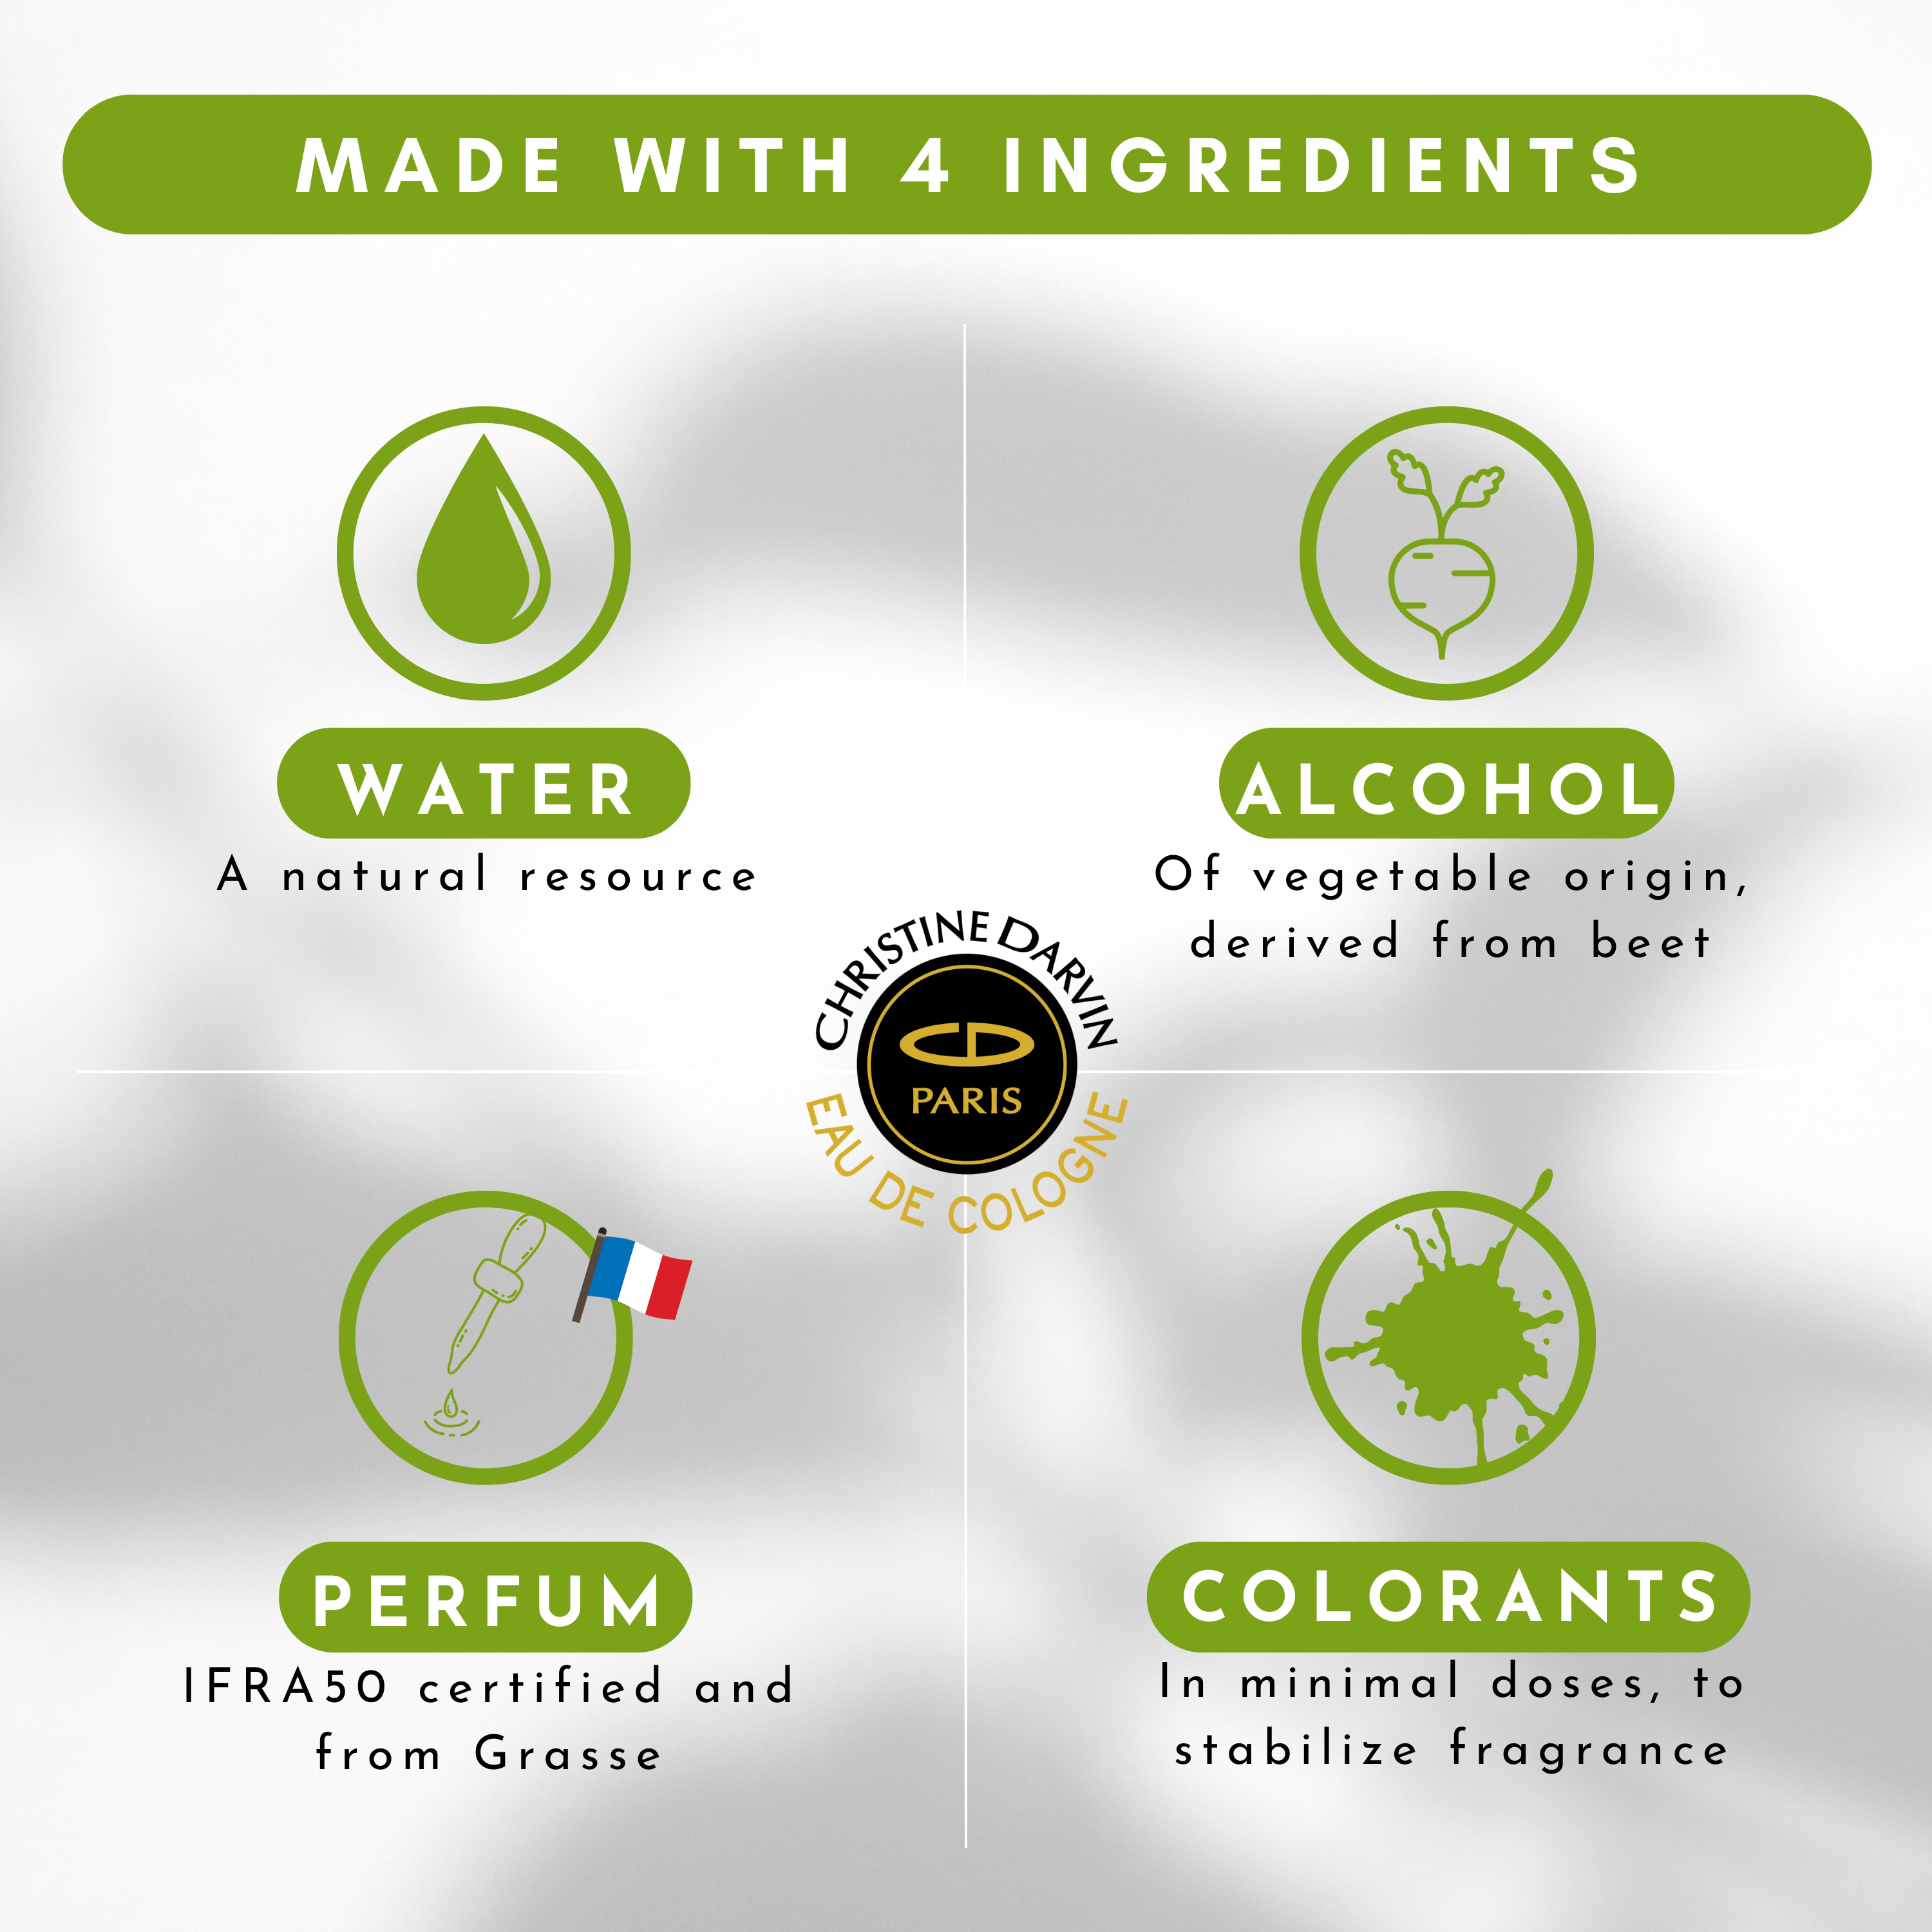 Ingrédient eau de Cologne parfum Tea natural 97% natural origin and 100% French